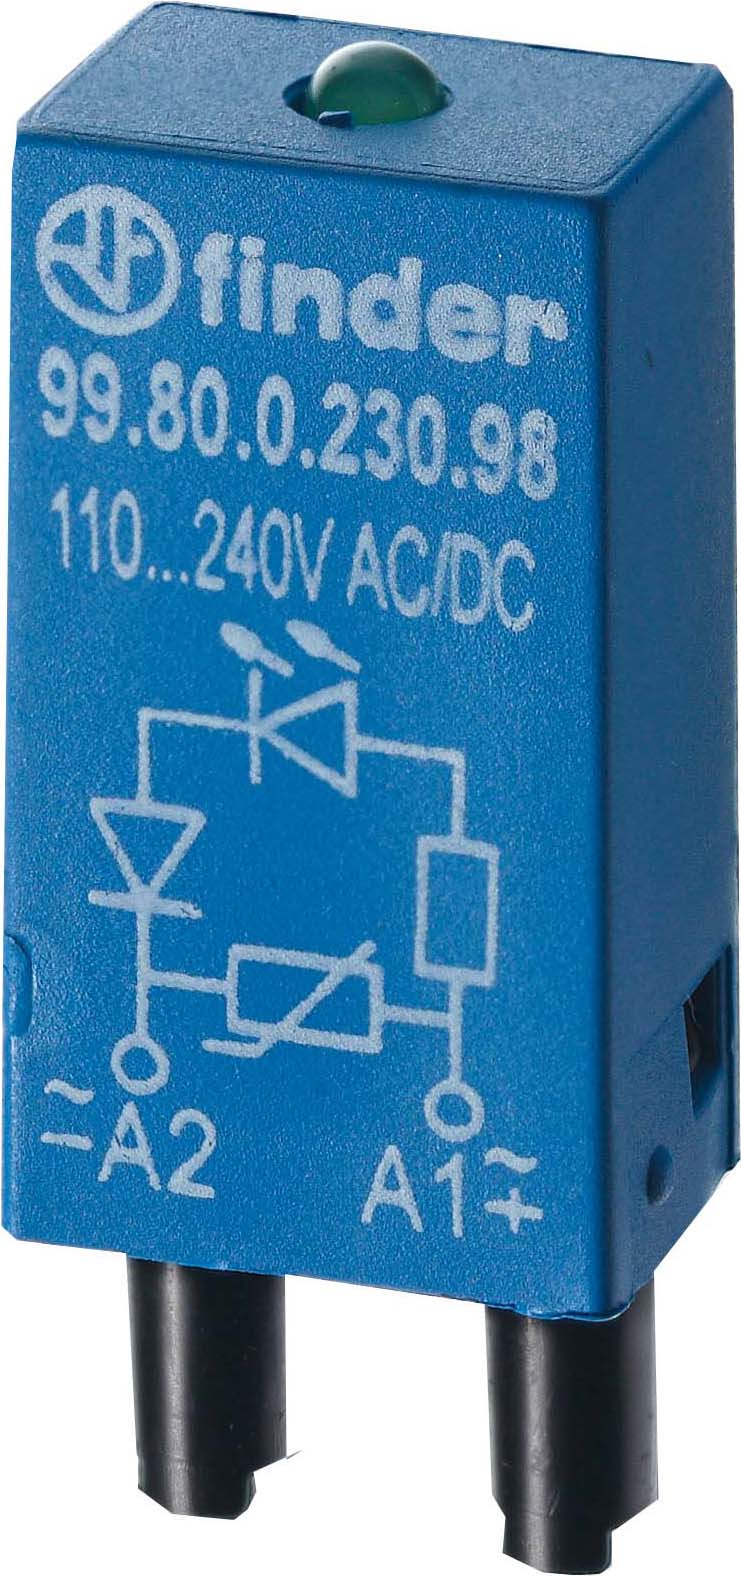 Finder LED rt + Diode 6..24VDC f.Fas. 94.82/83/84 99.80.9.024.90